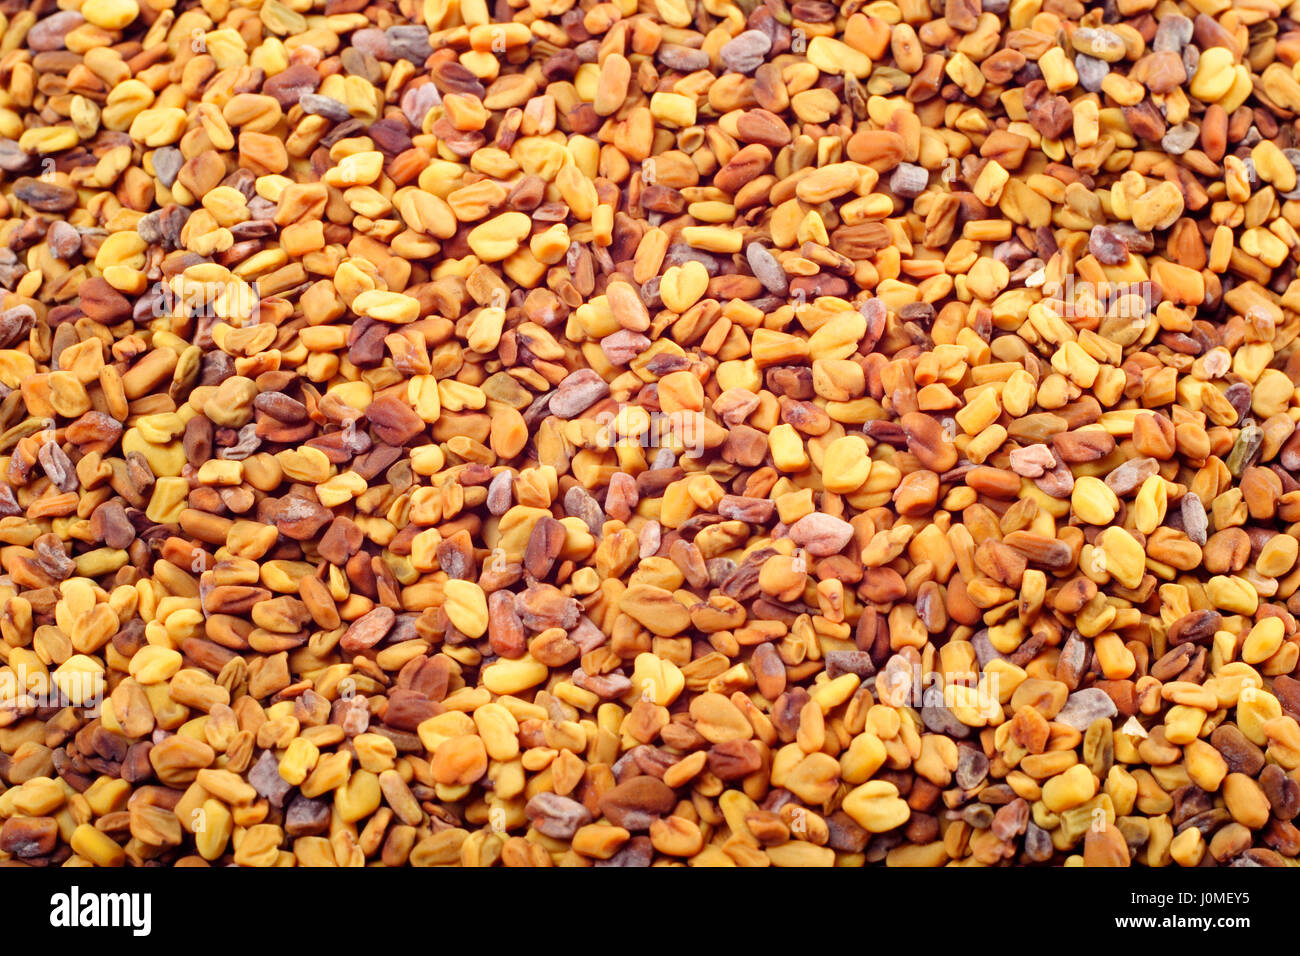 Fenugreek (Trigonella foenum-graecum) seeds. Close-up, full frame. Stock Photo